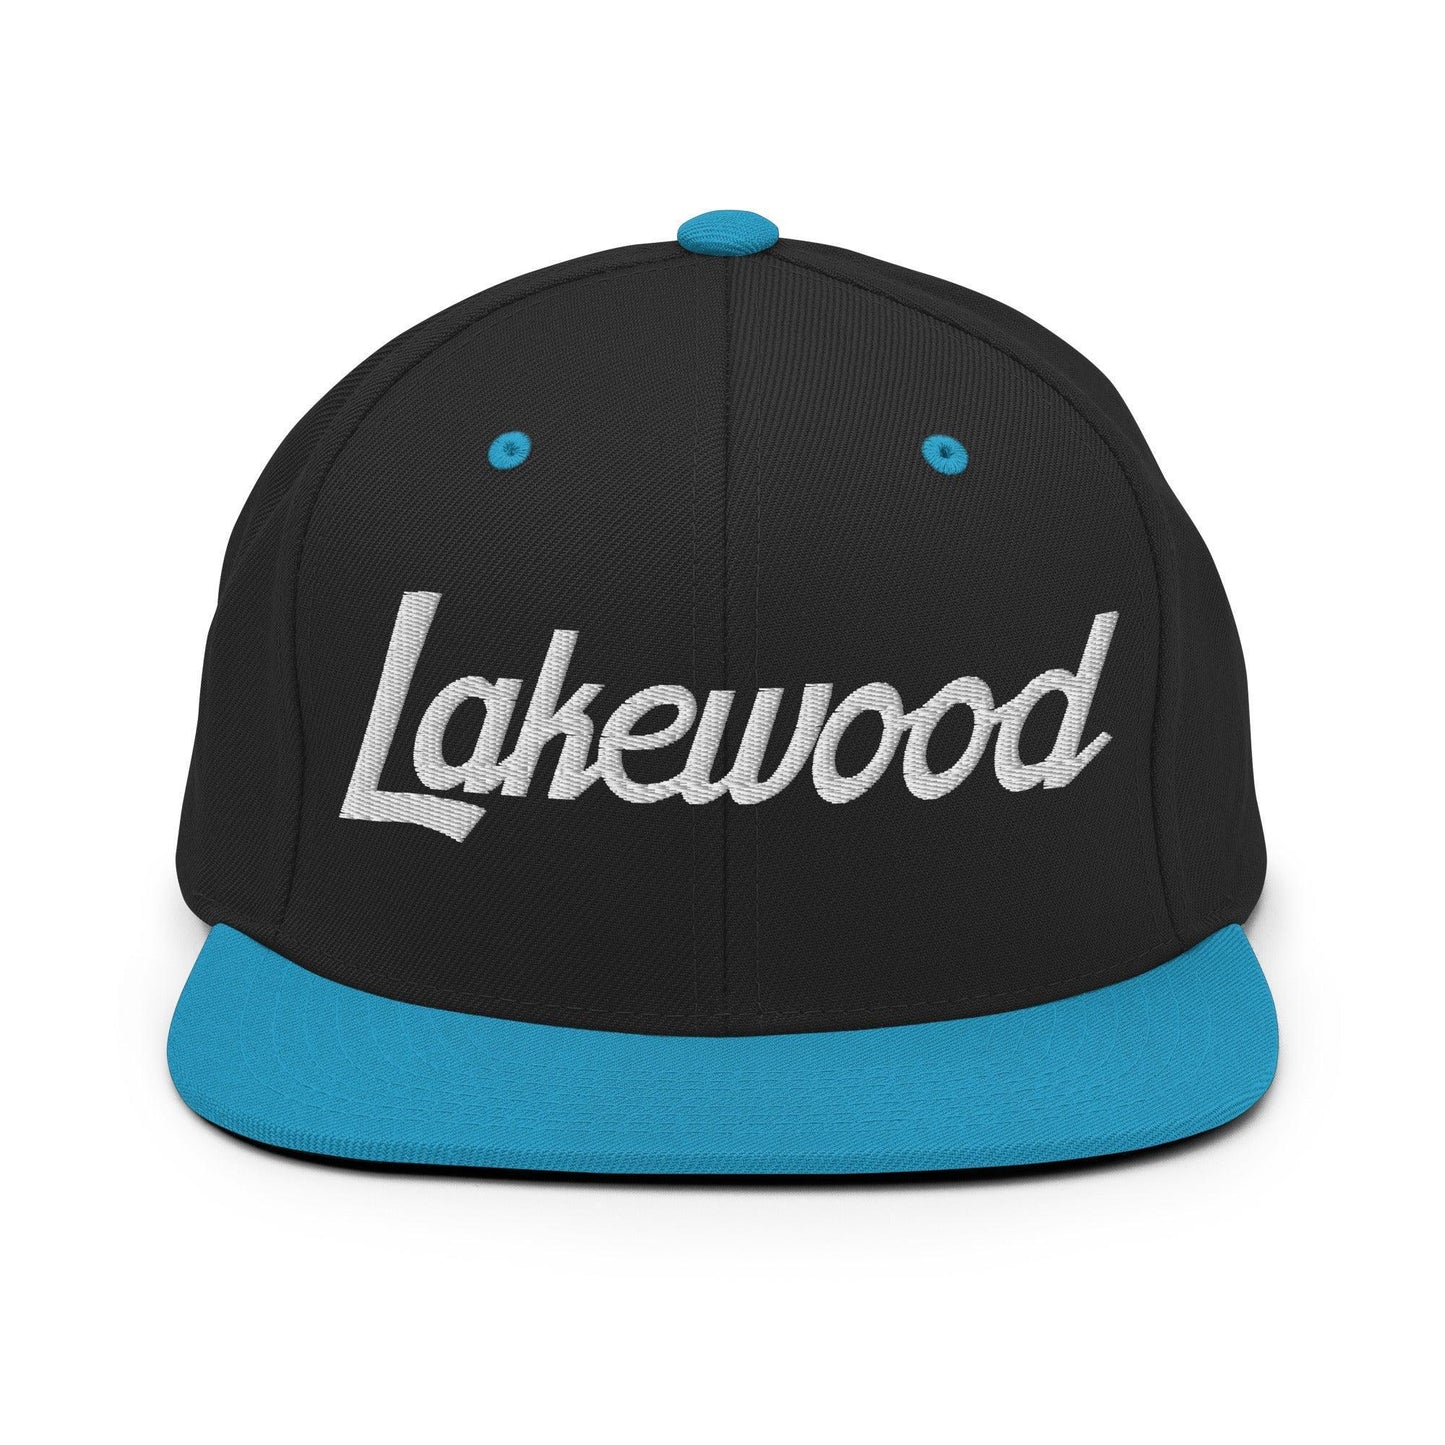 Lakewood Script Snapback Hat Black Teal